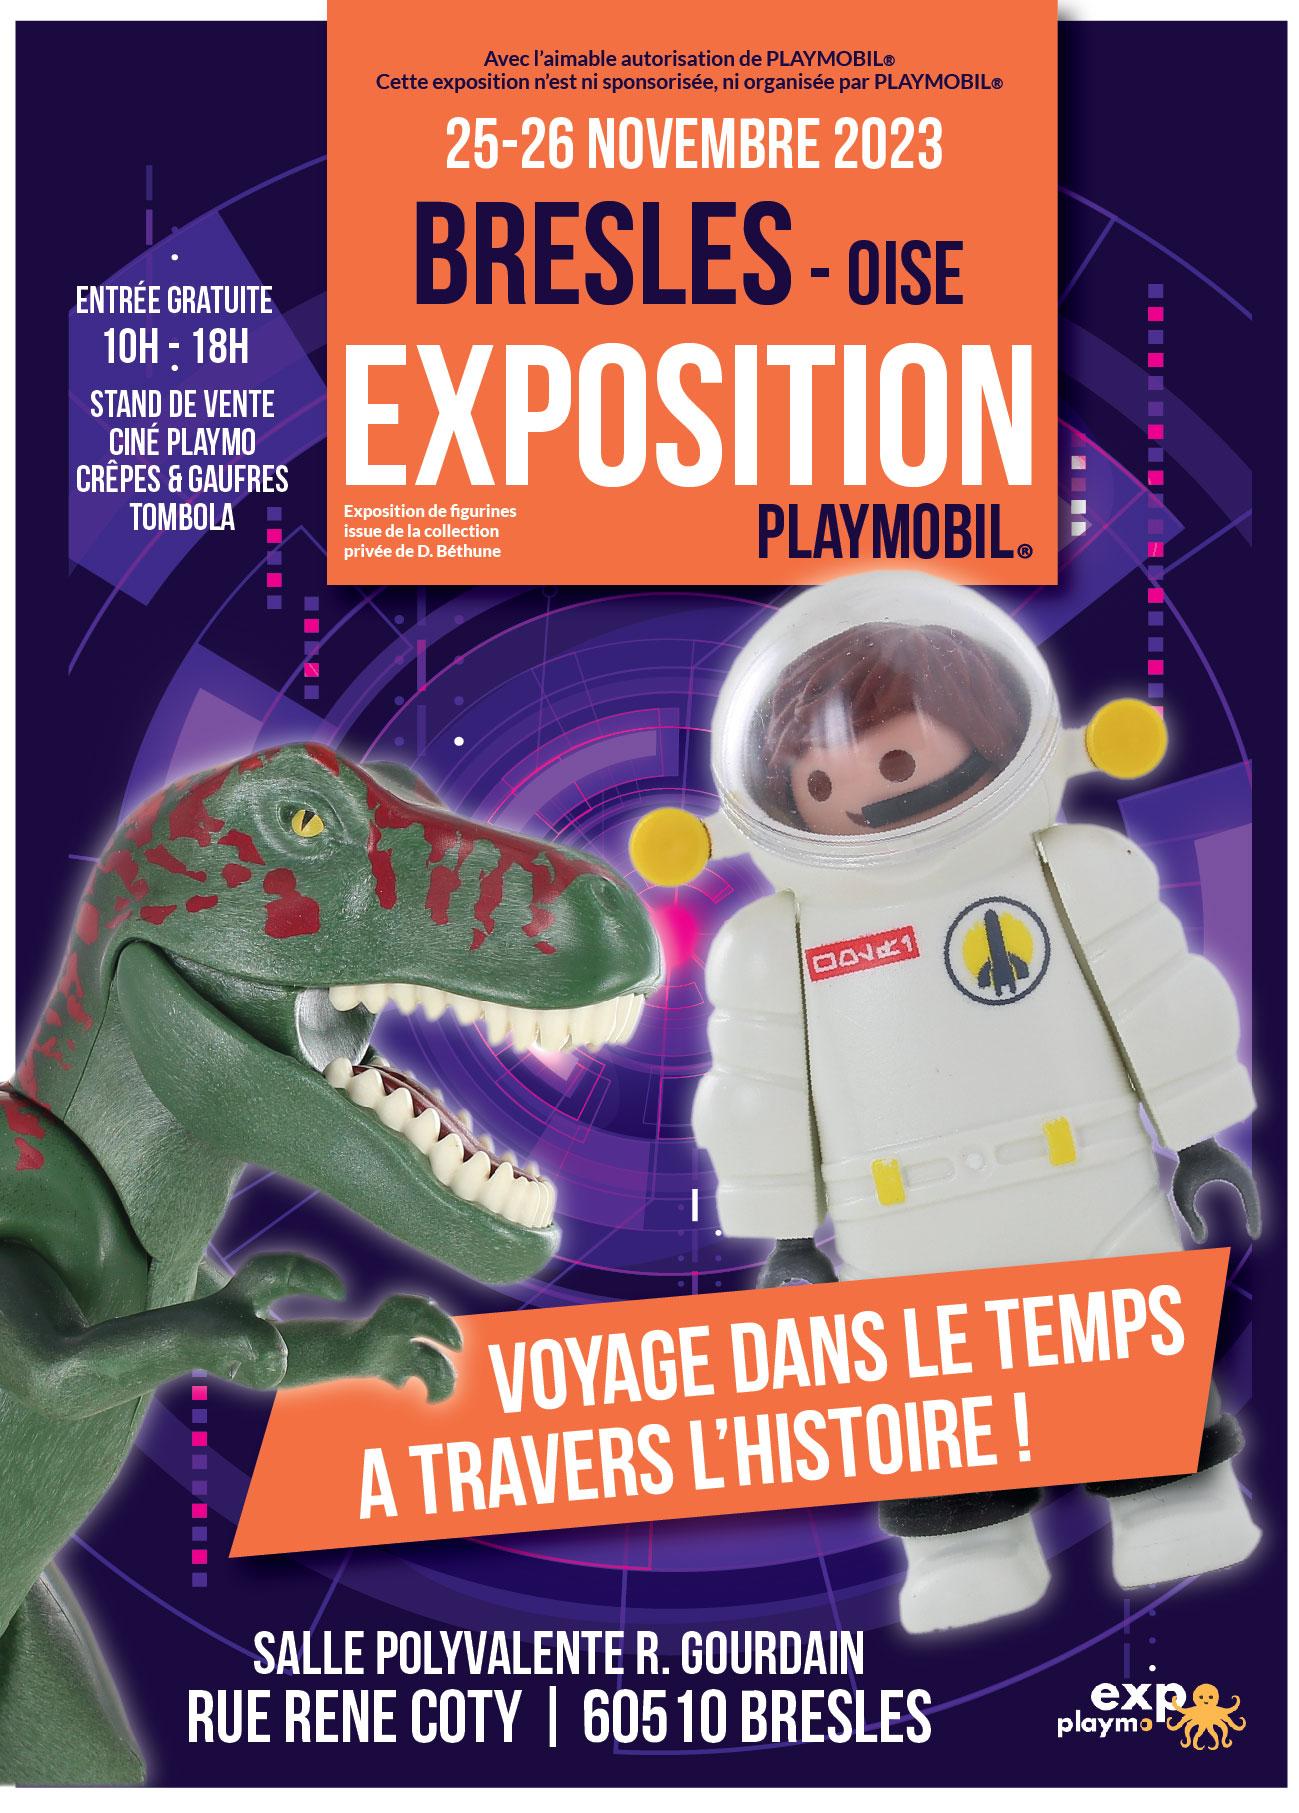 Affiche exposition playmobil bresles 2023 v1 01